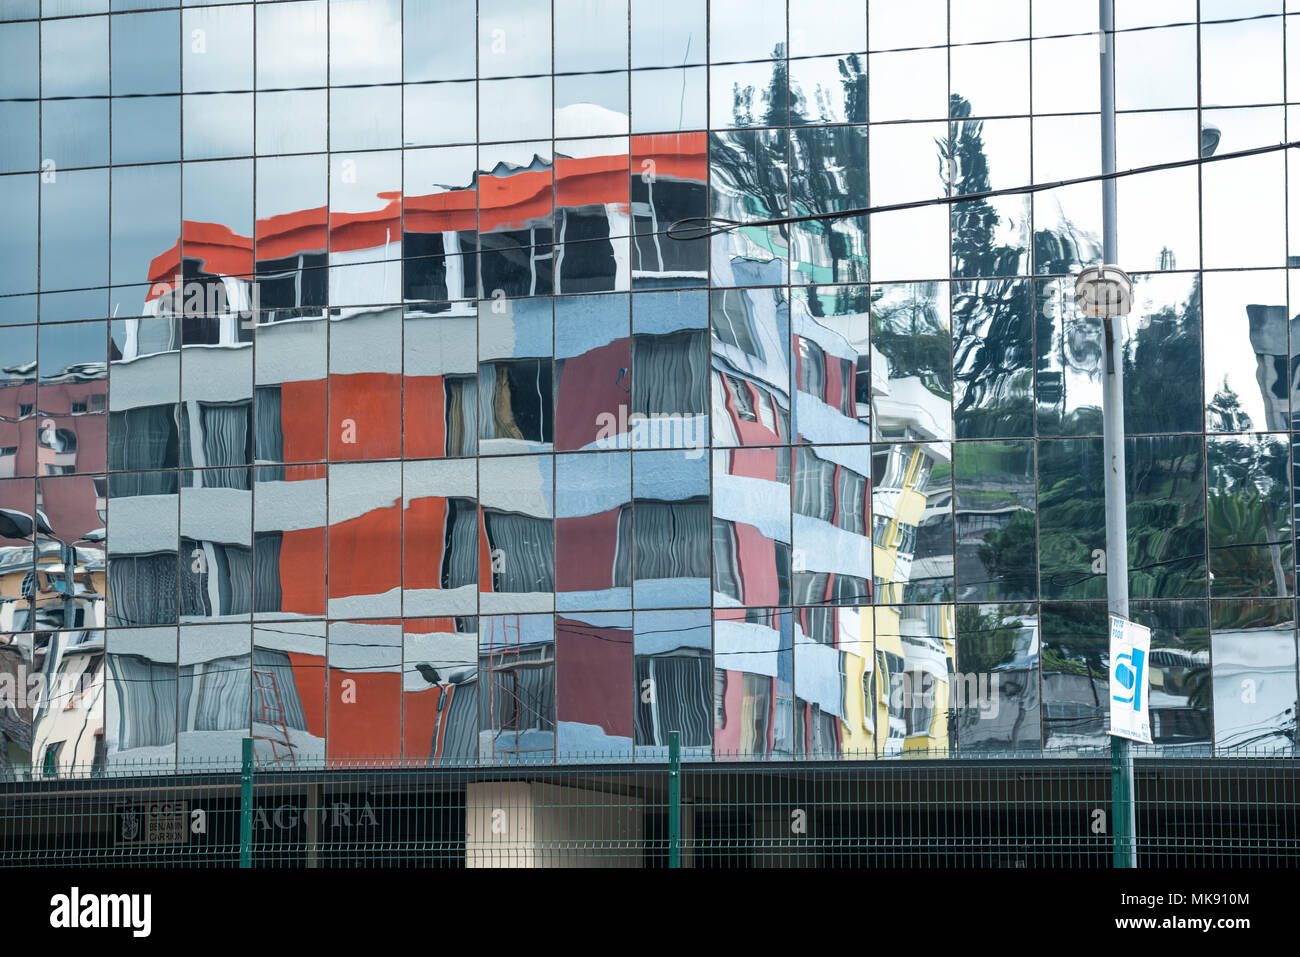 Los edificios se refleja en la fachada de cristal de la casa de la Cultura Ecuatoriana en Quito, Ecuador. Foto de stock